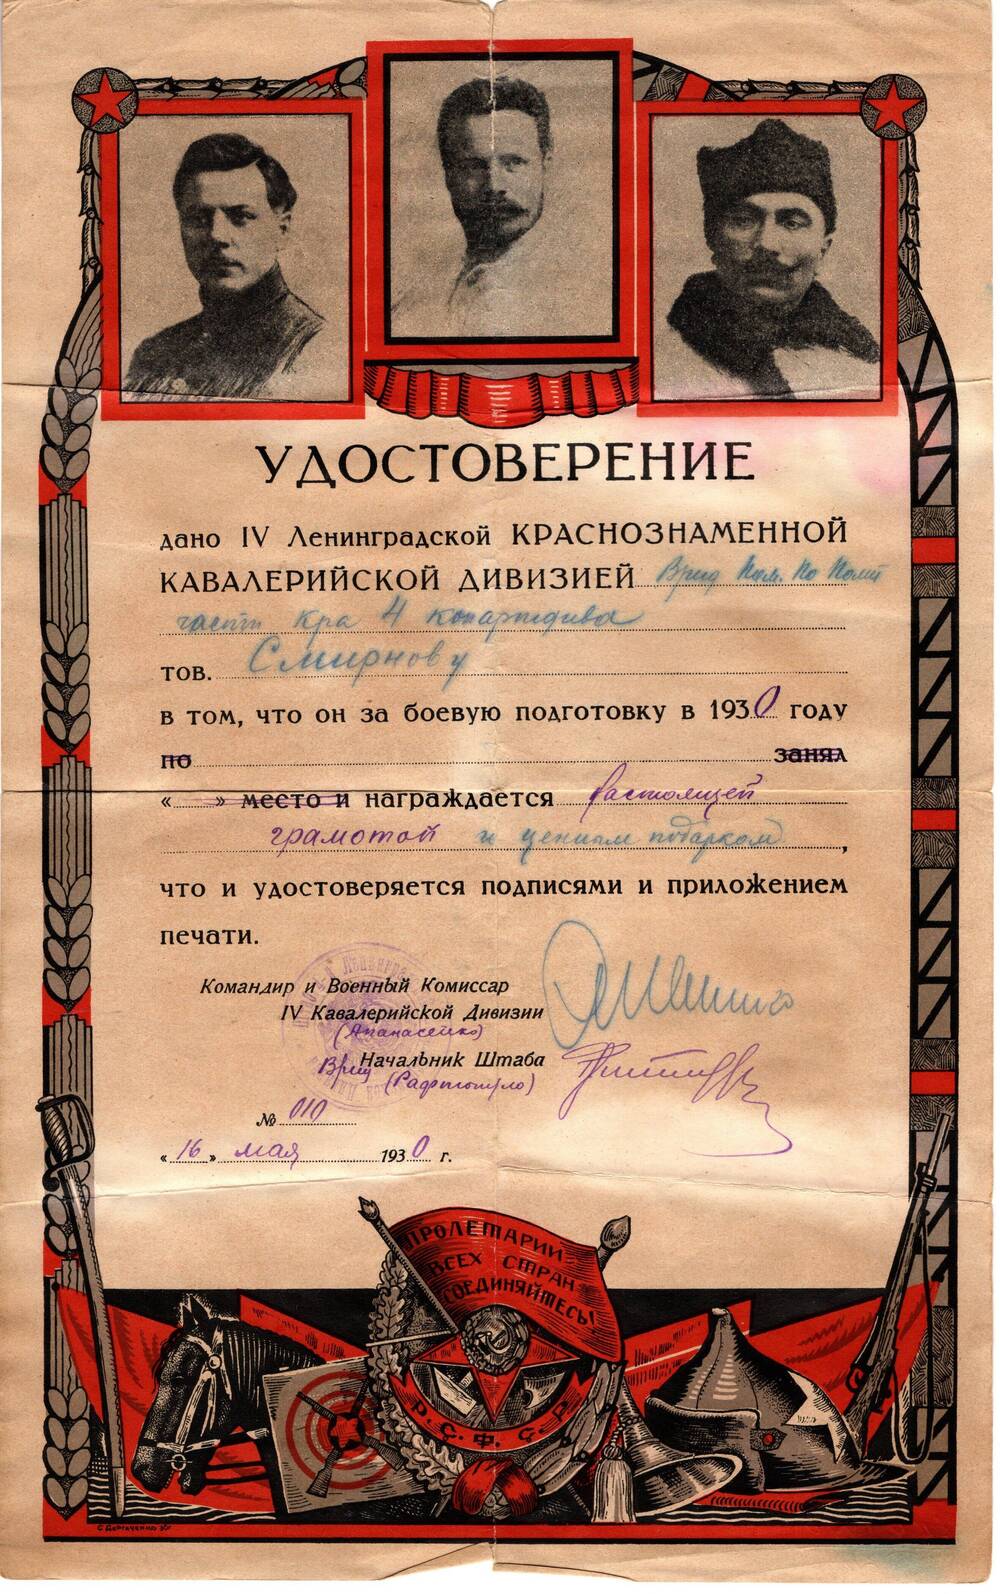 Удостоверение №010 от 16 мая 1930г. Ленинградской Краснознаменной кавалерийской дивизии Смирнову Михаилу